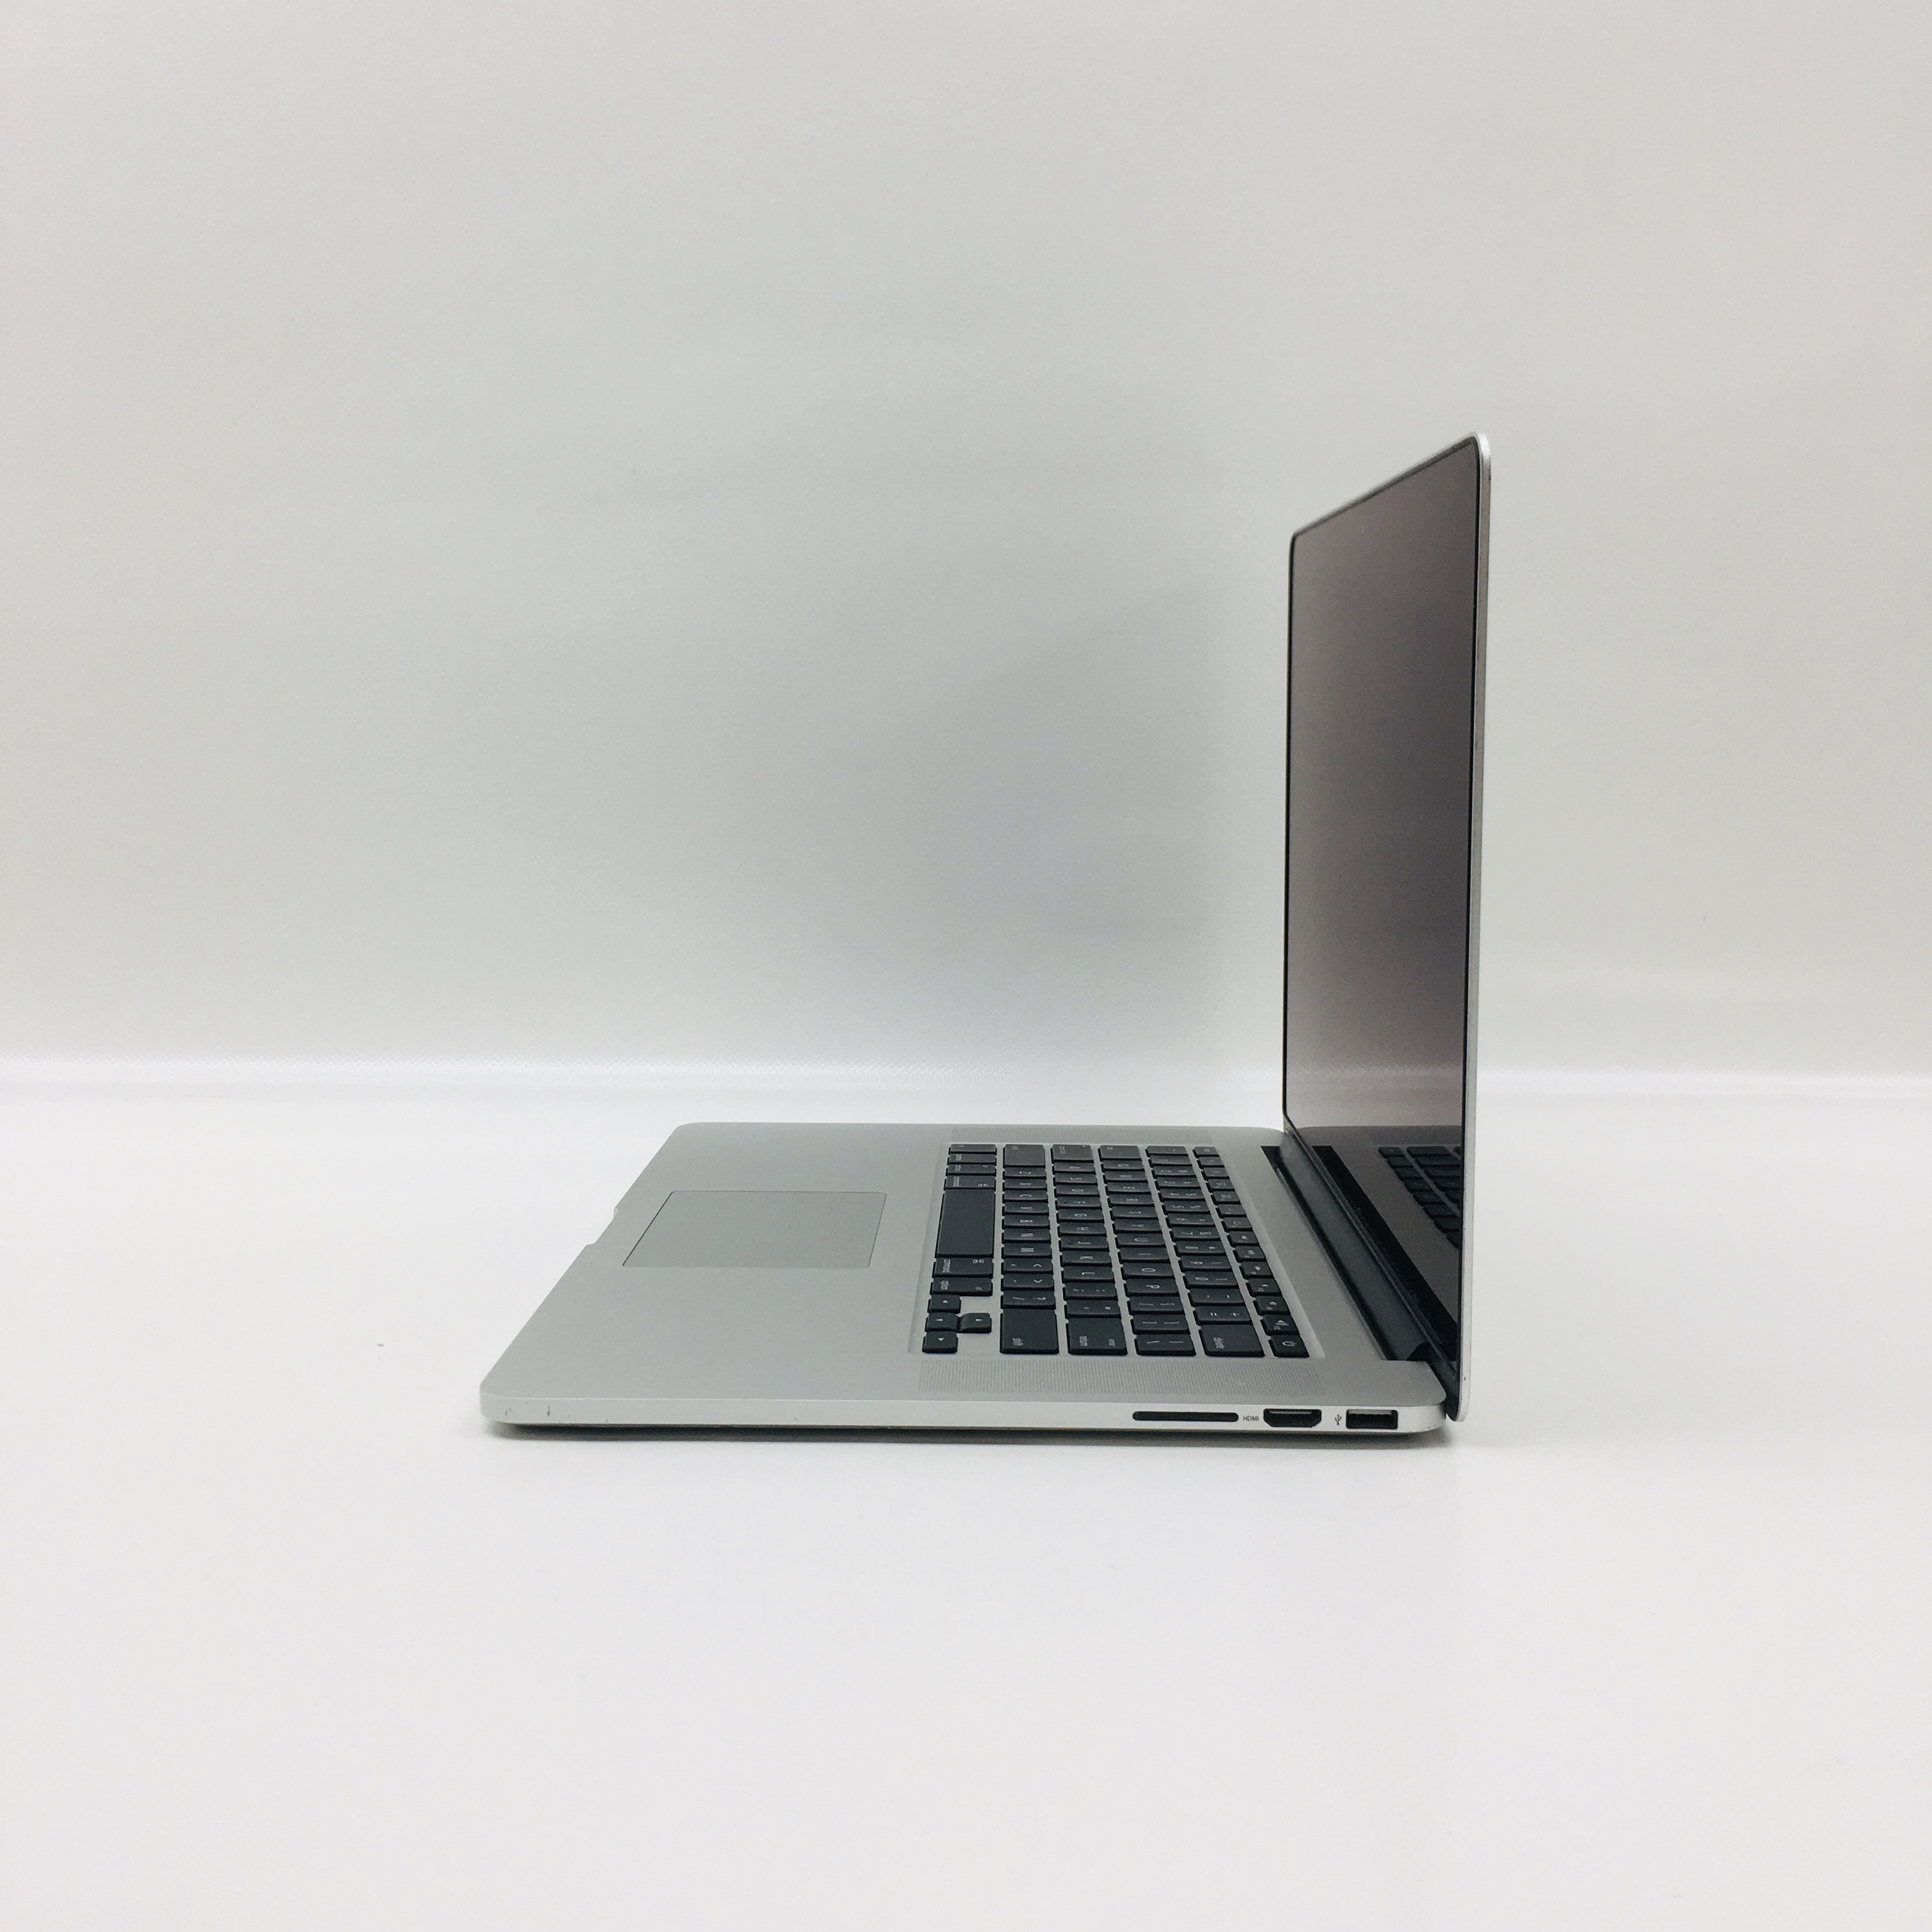 MacBook Pro Retina 15" Mid 2014 (Intel Quad-Core i7 2.5 GHz 16 GB RAM 256 GB SSD), Intel Quad-Core i7 2.5 GHz, 16 GB RAM, 256 GB SSD, image 2